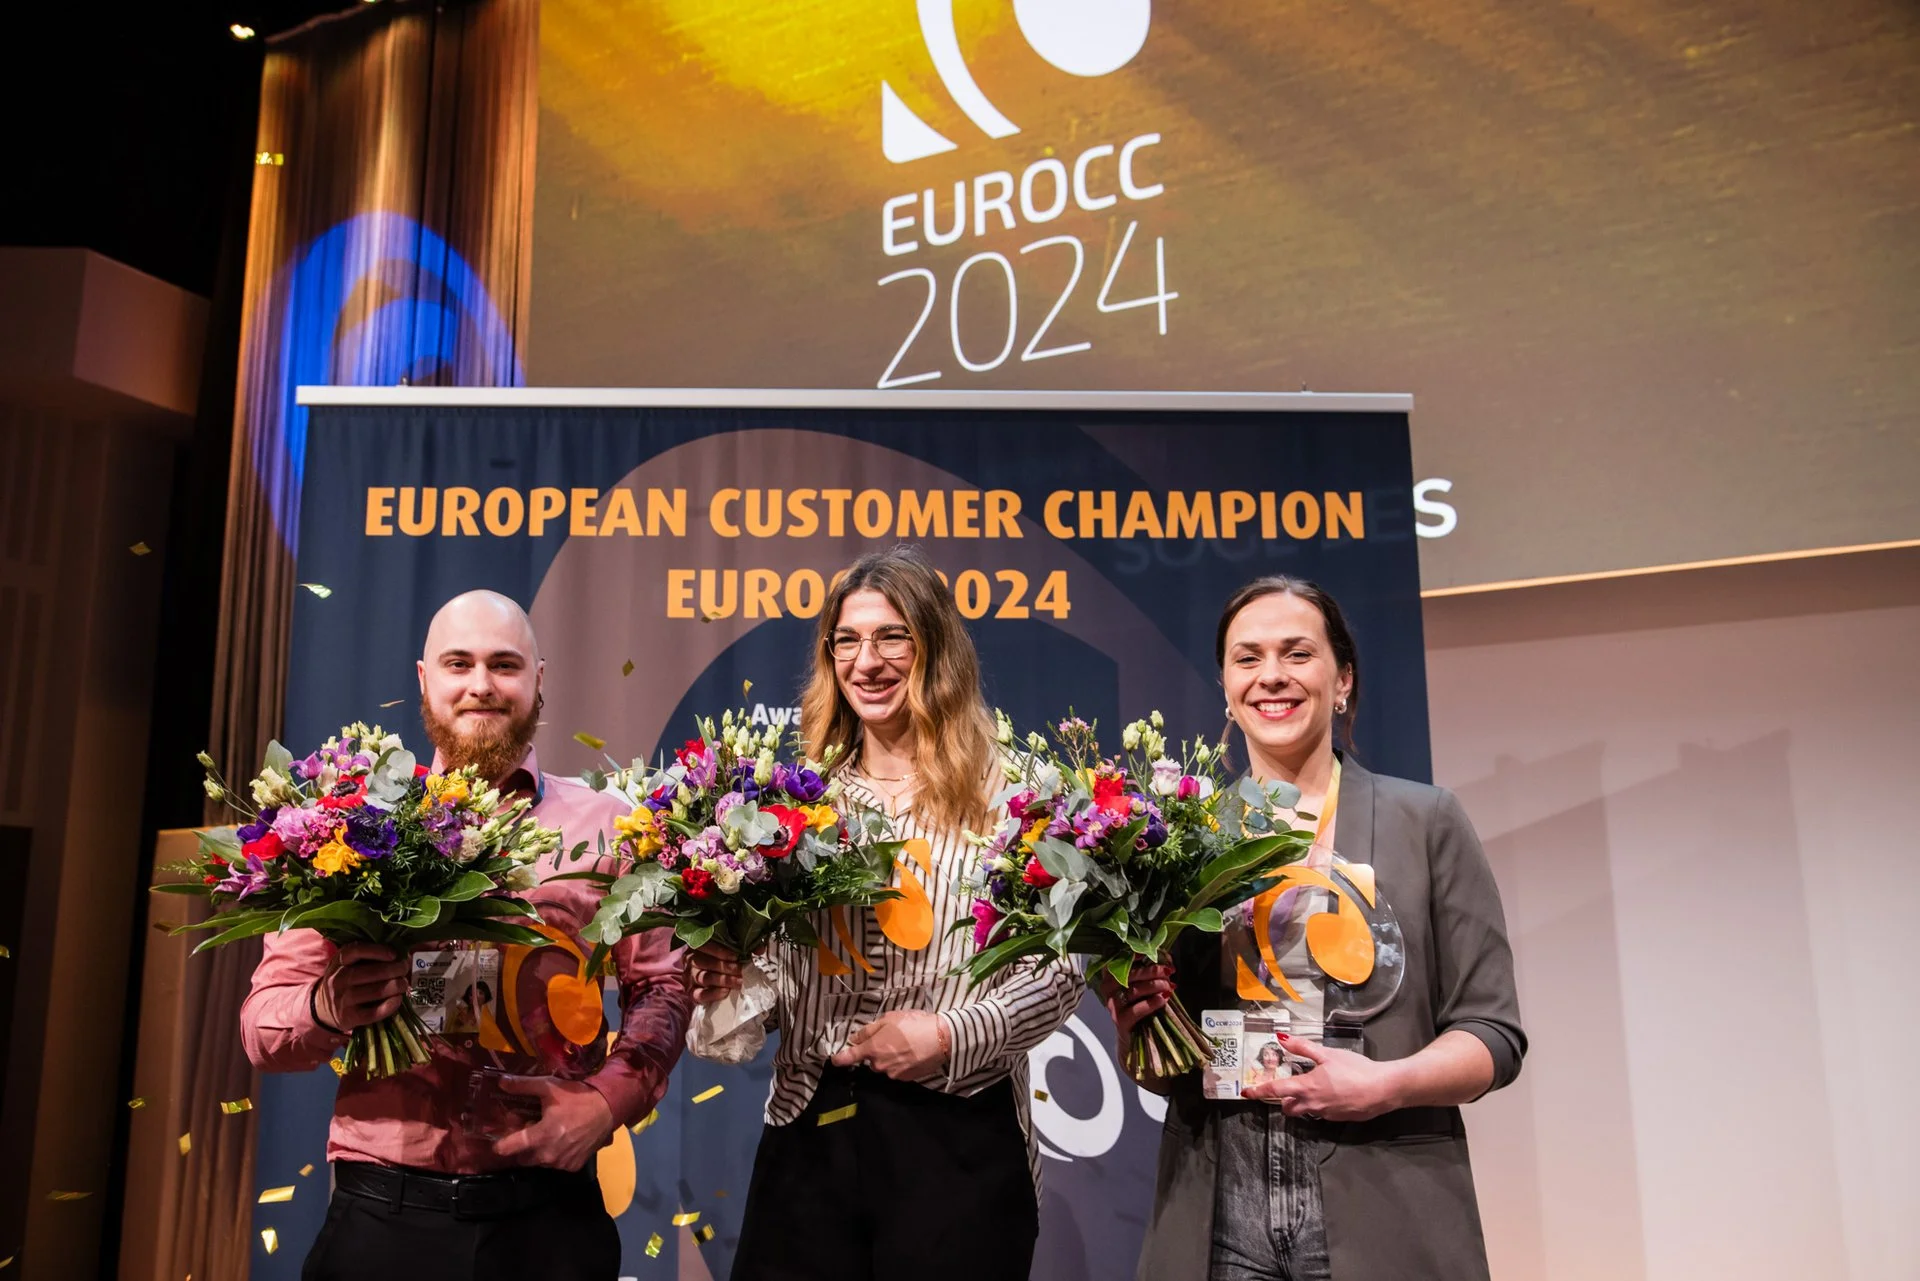 Zum 3. Mal wurden die European Customer Champions geehrt_EUROCC 2024_CCW_cmm360_Bid:ManagementCircle